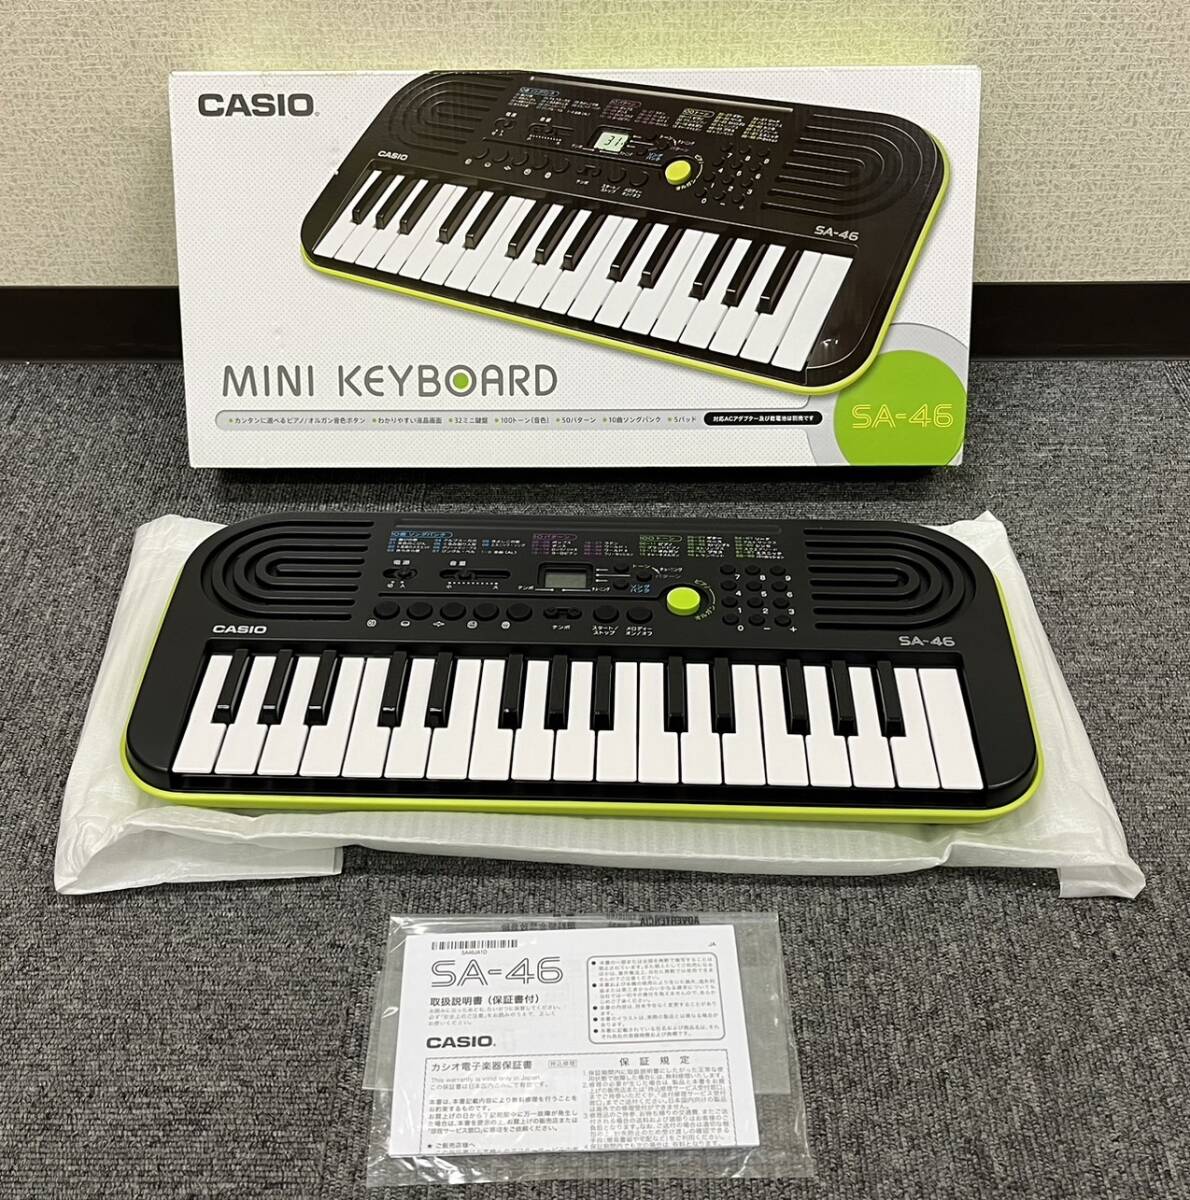 [ST18769MG]CASIO MINI KEYBOARD SA-46/ Casio Mini клавиатура электронный клавиатура коробка иметь есть инструкция по эксплуатации музыкальные инструменты клавиатура * работоспособность не проверялась 